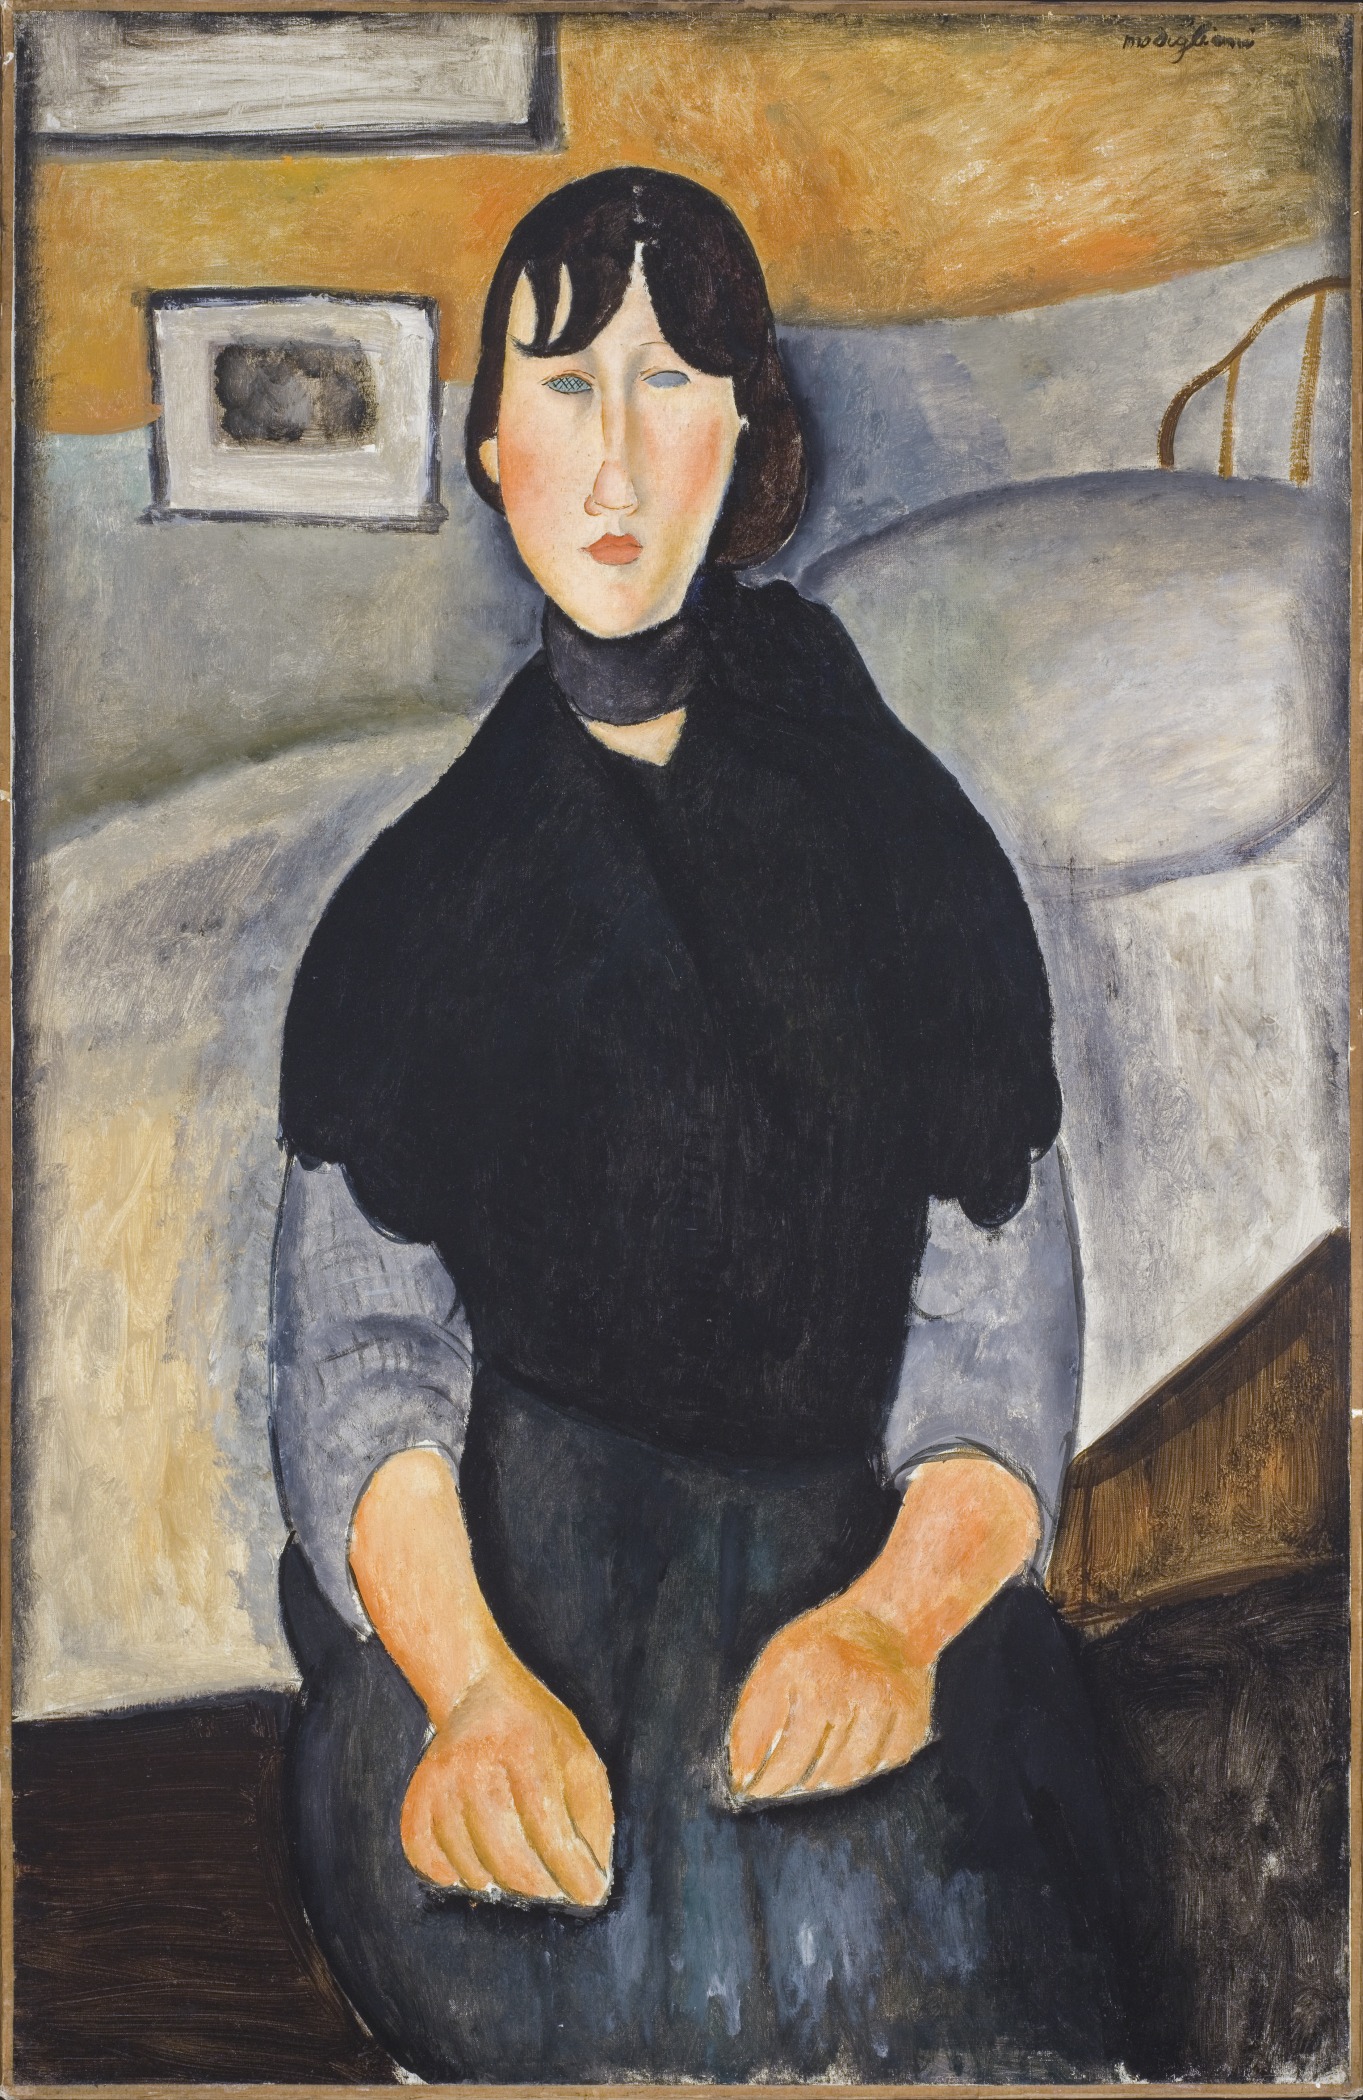 人中之女 by Amedeo Modigliani - 1918 - 89.535 x 64.135 cm 